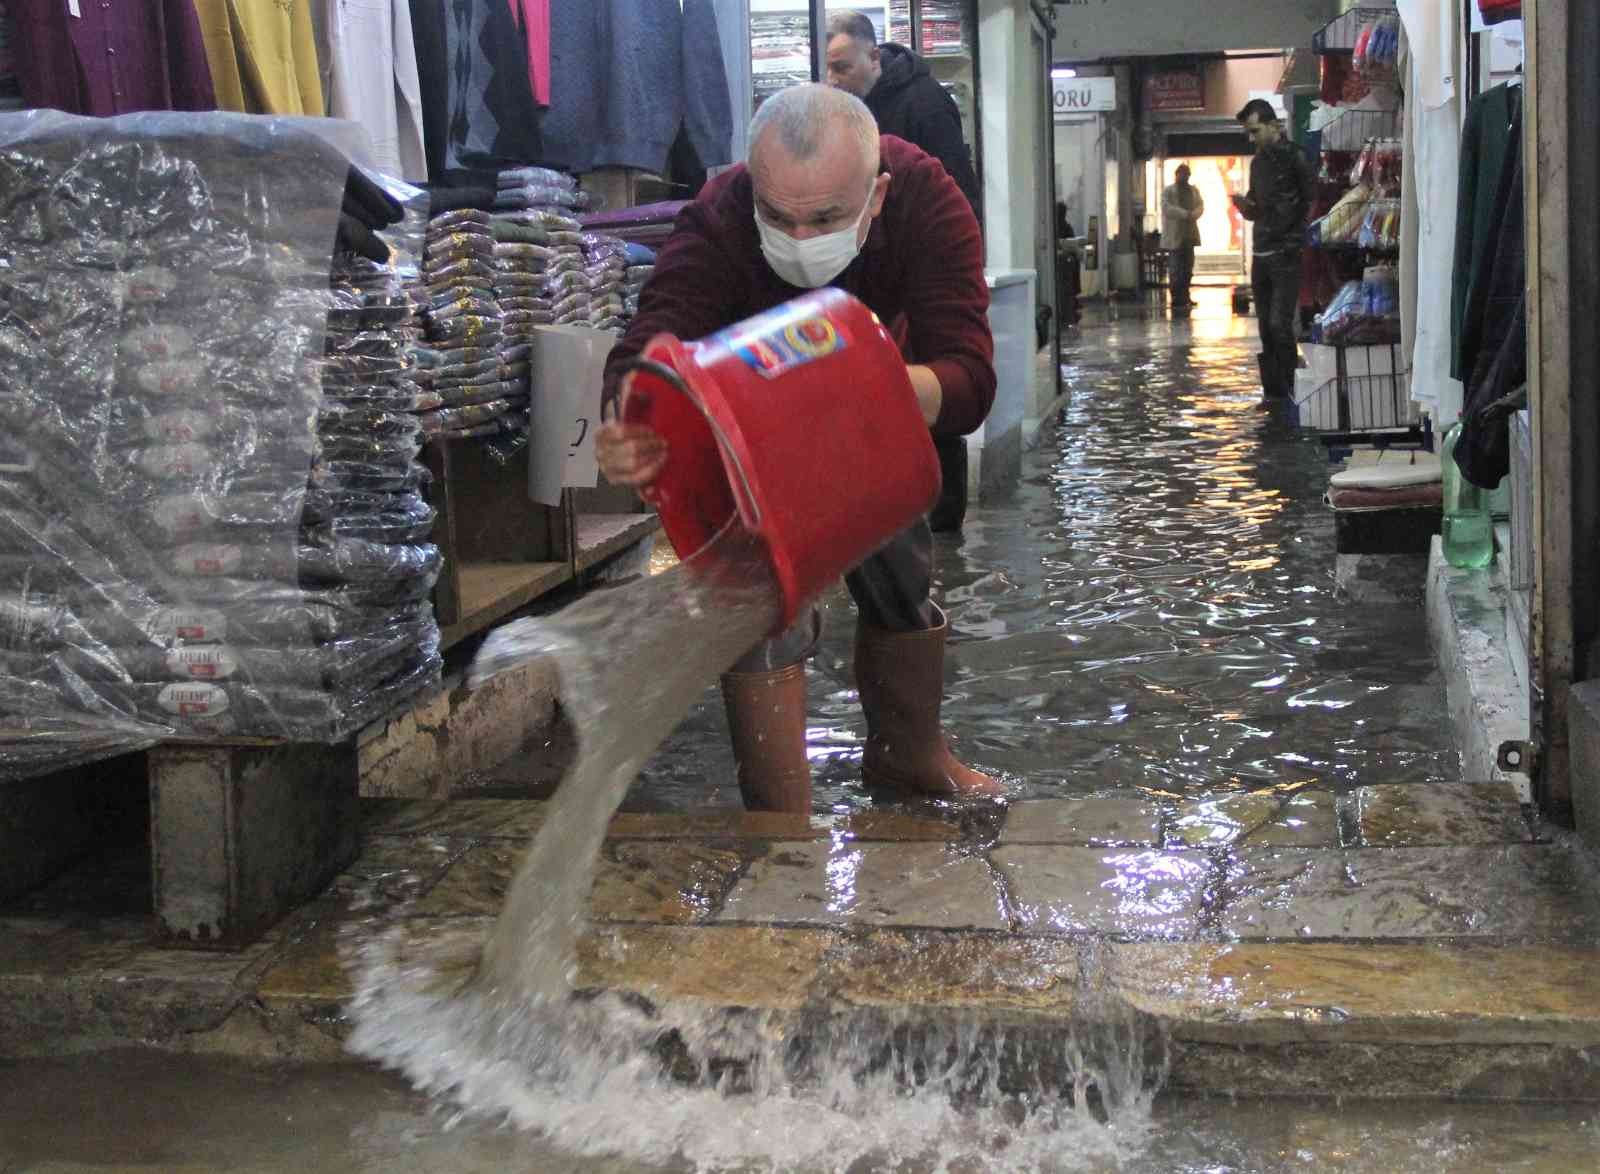 İzmir’de esnafın yağmur suyu çilesi #izmir